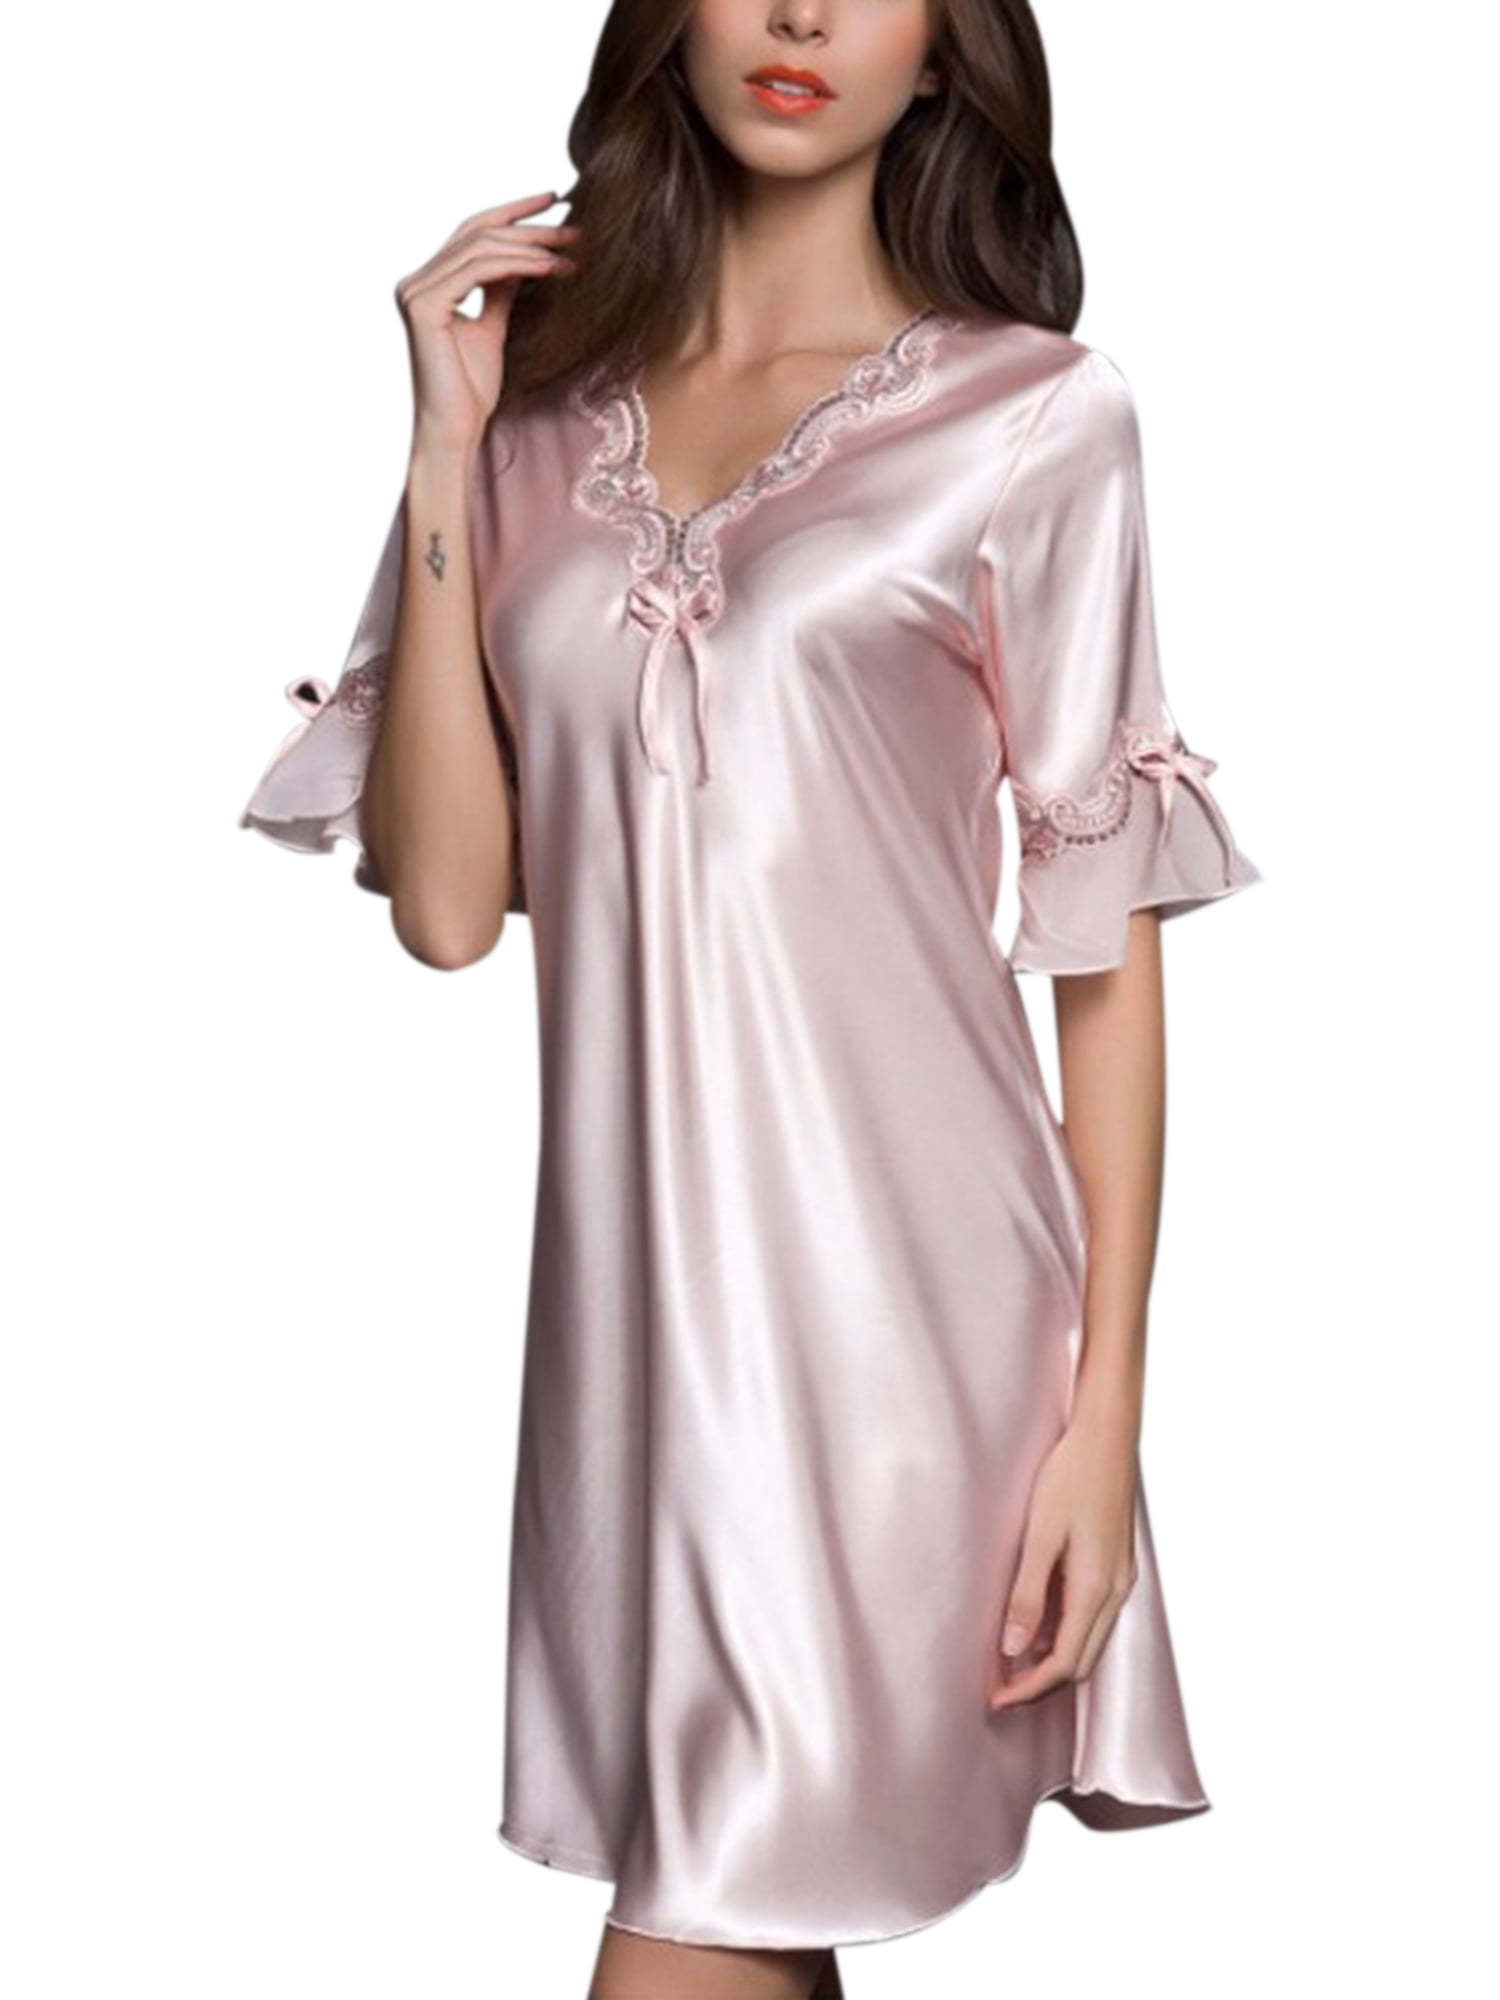 Womens Floral Lace Silk Satin Lingerie Sleepwear Night Dress Nightwear Dress USA